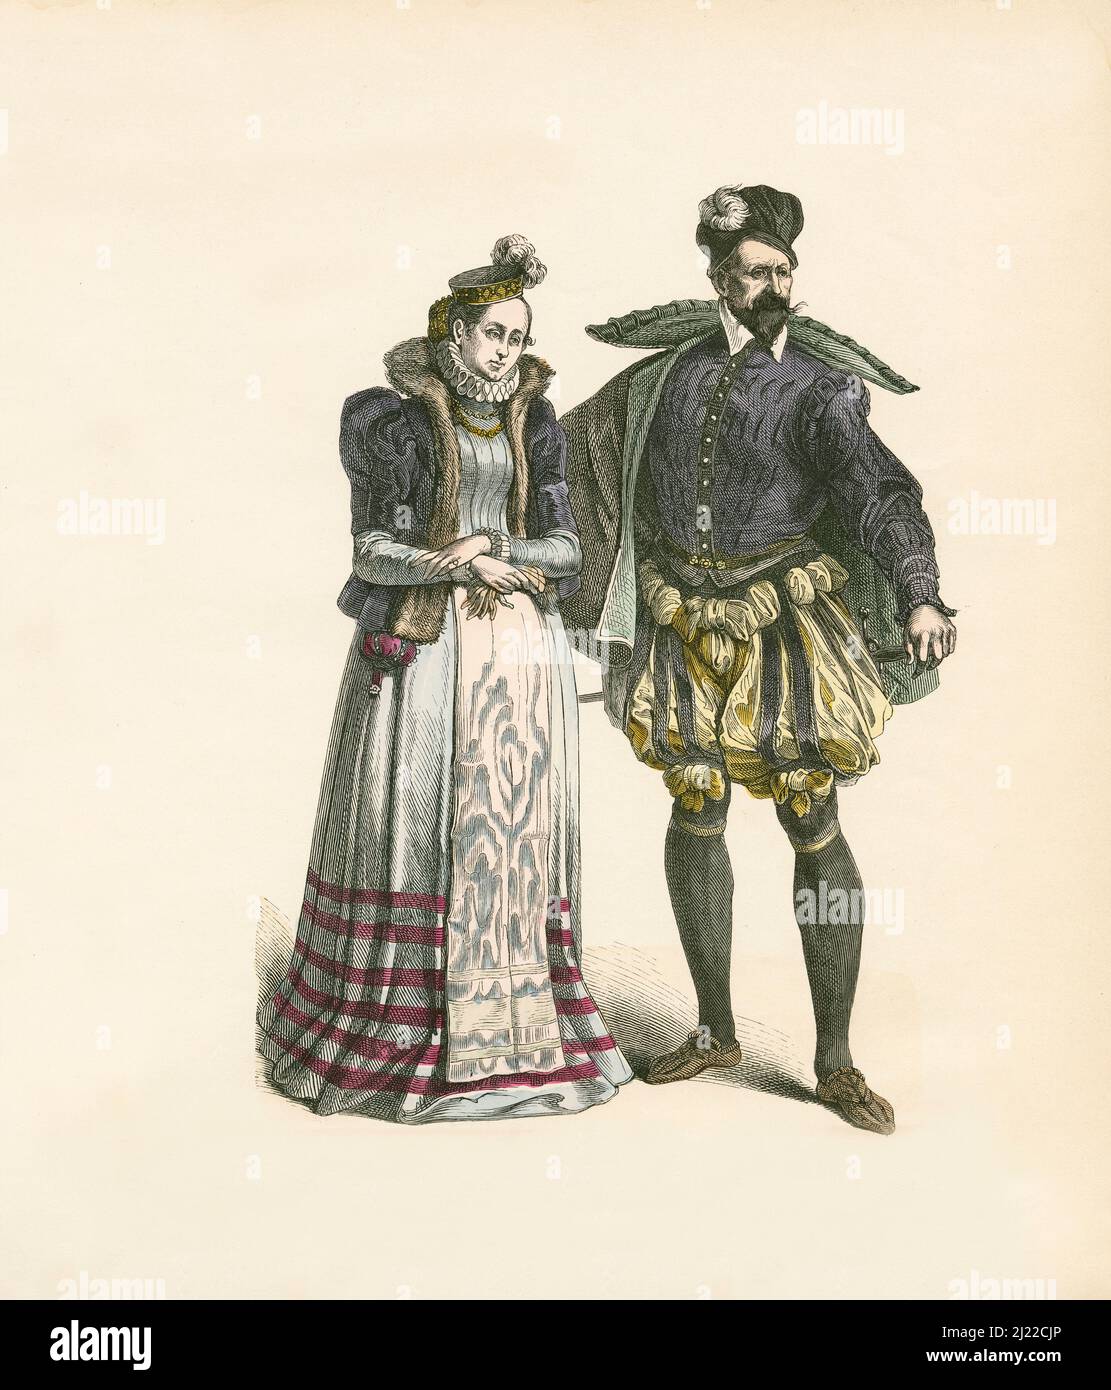 French Noble couple, dernier tiers du 16th siècle, Illustration, l'Histoire du Costume, Braun & Schneider, Munich, Allemagne, 1861-1880 Banque D'Images